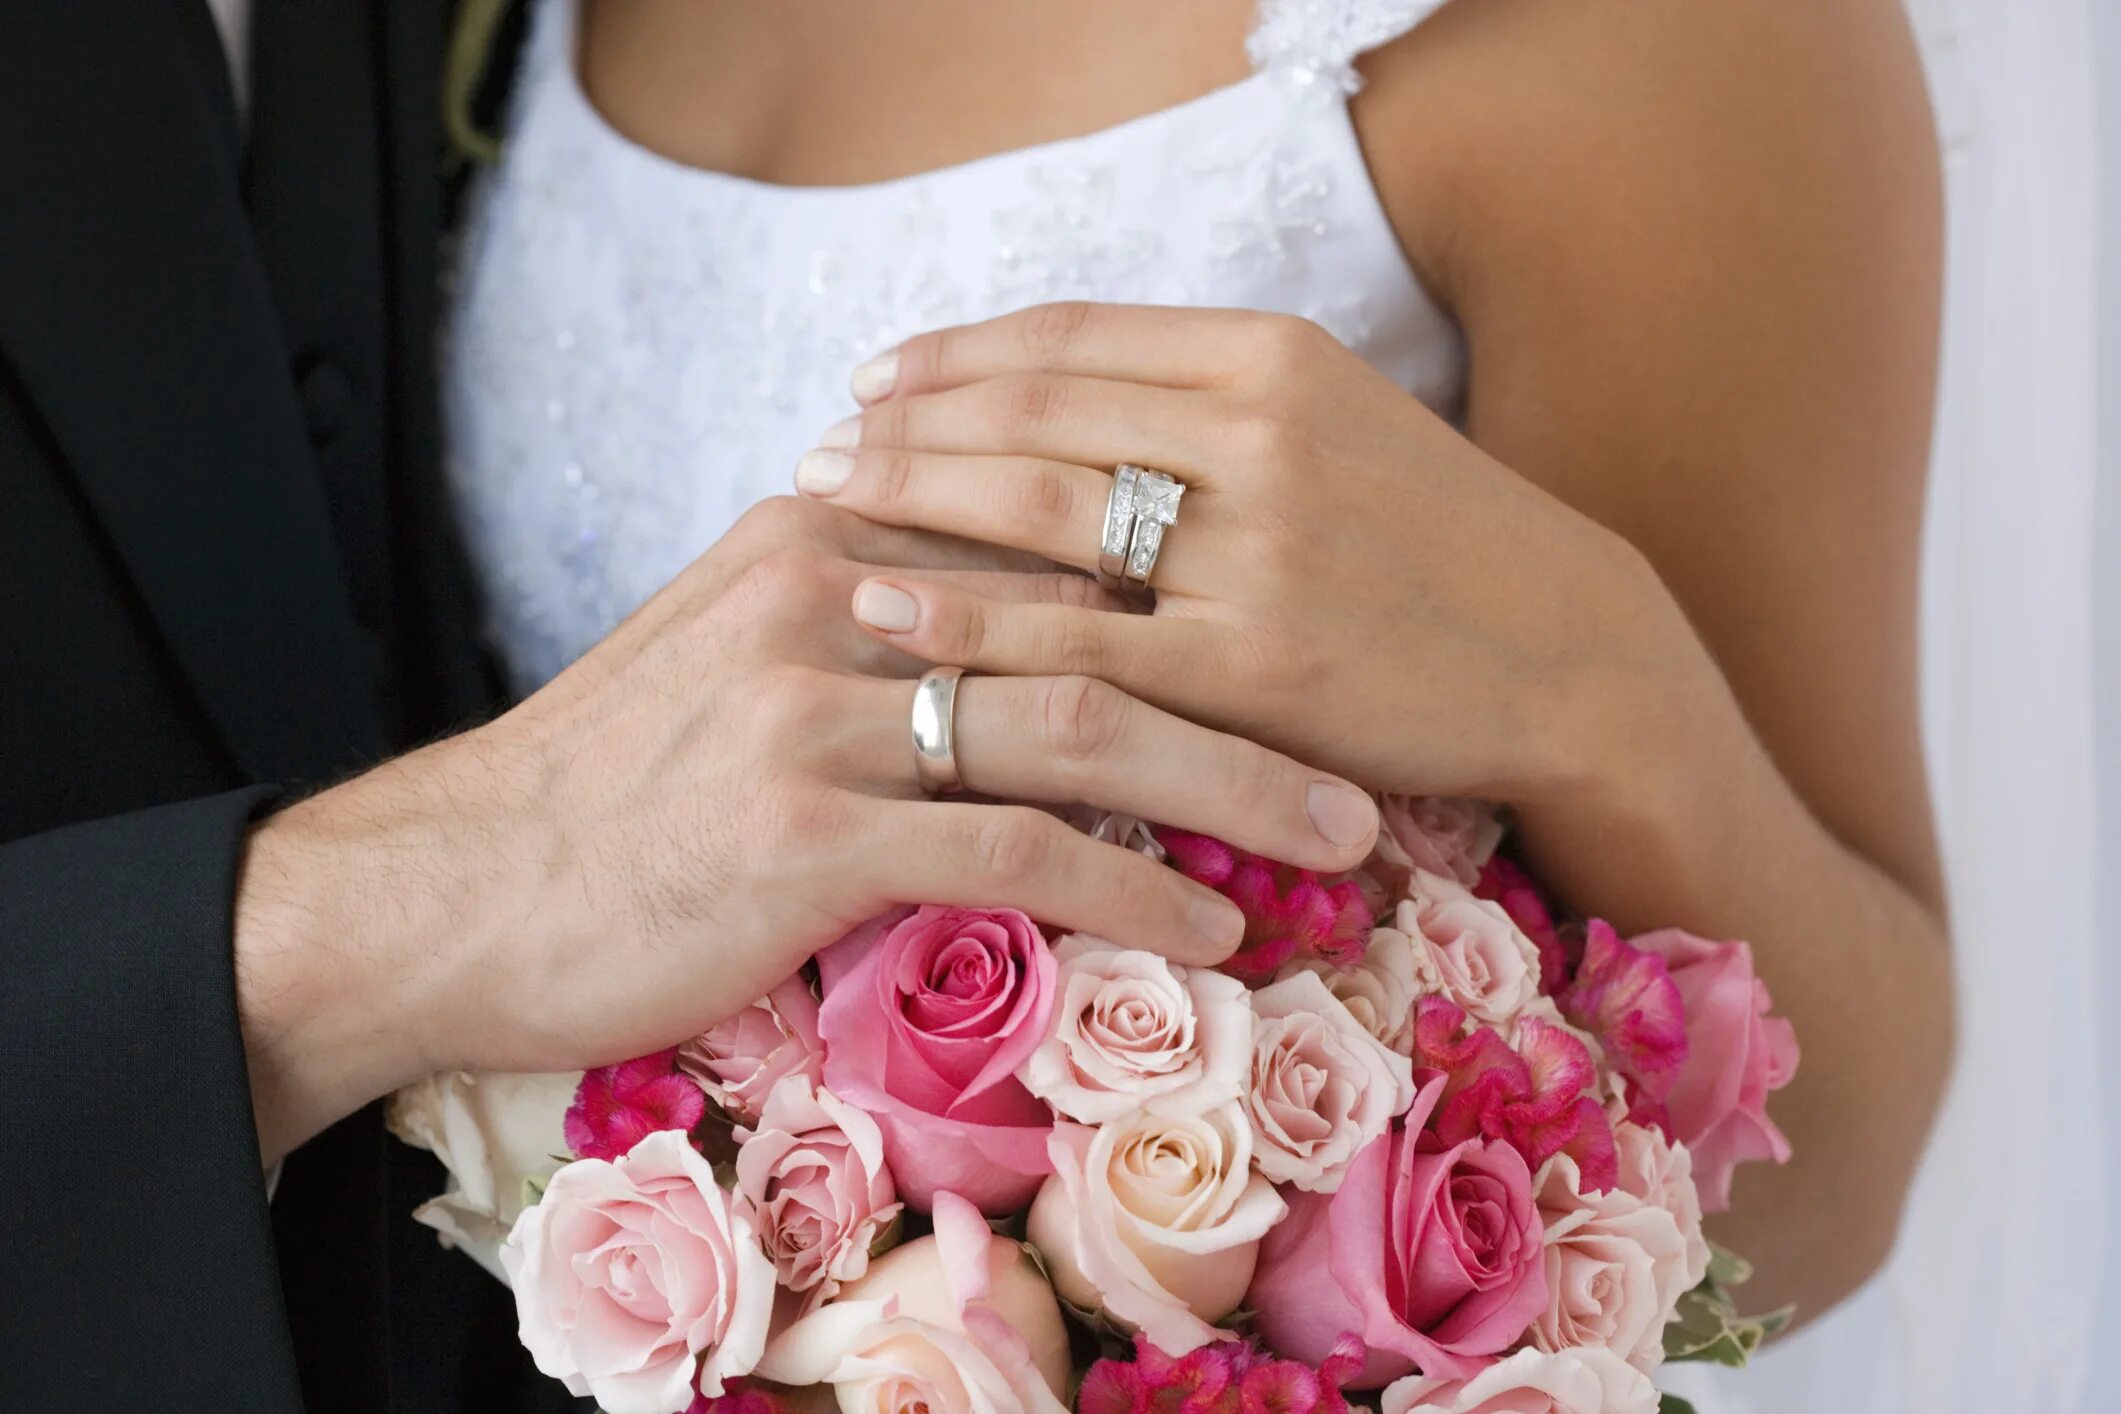 Кольцо замужества. Свадебные кольца на руках. Кольцо для замужества. Молодожены руки с кольцами. Свадьба руки с кольцами.